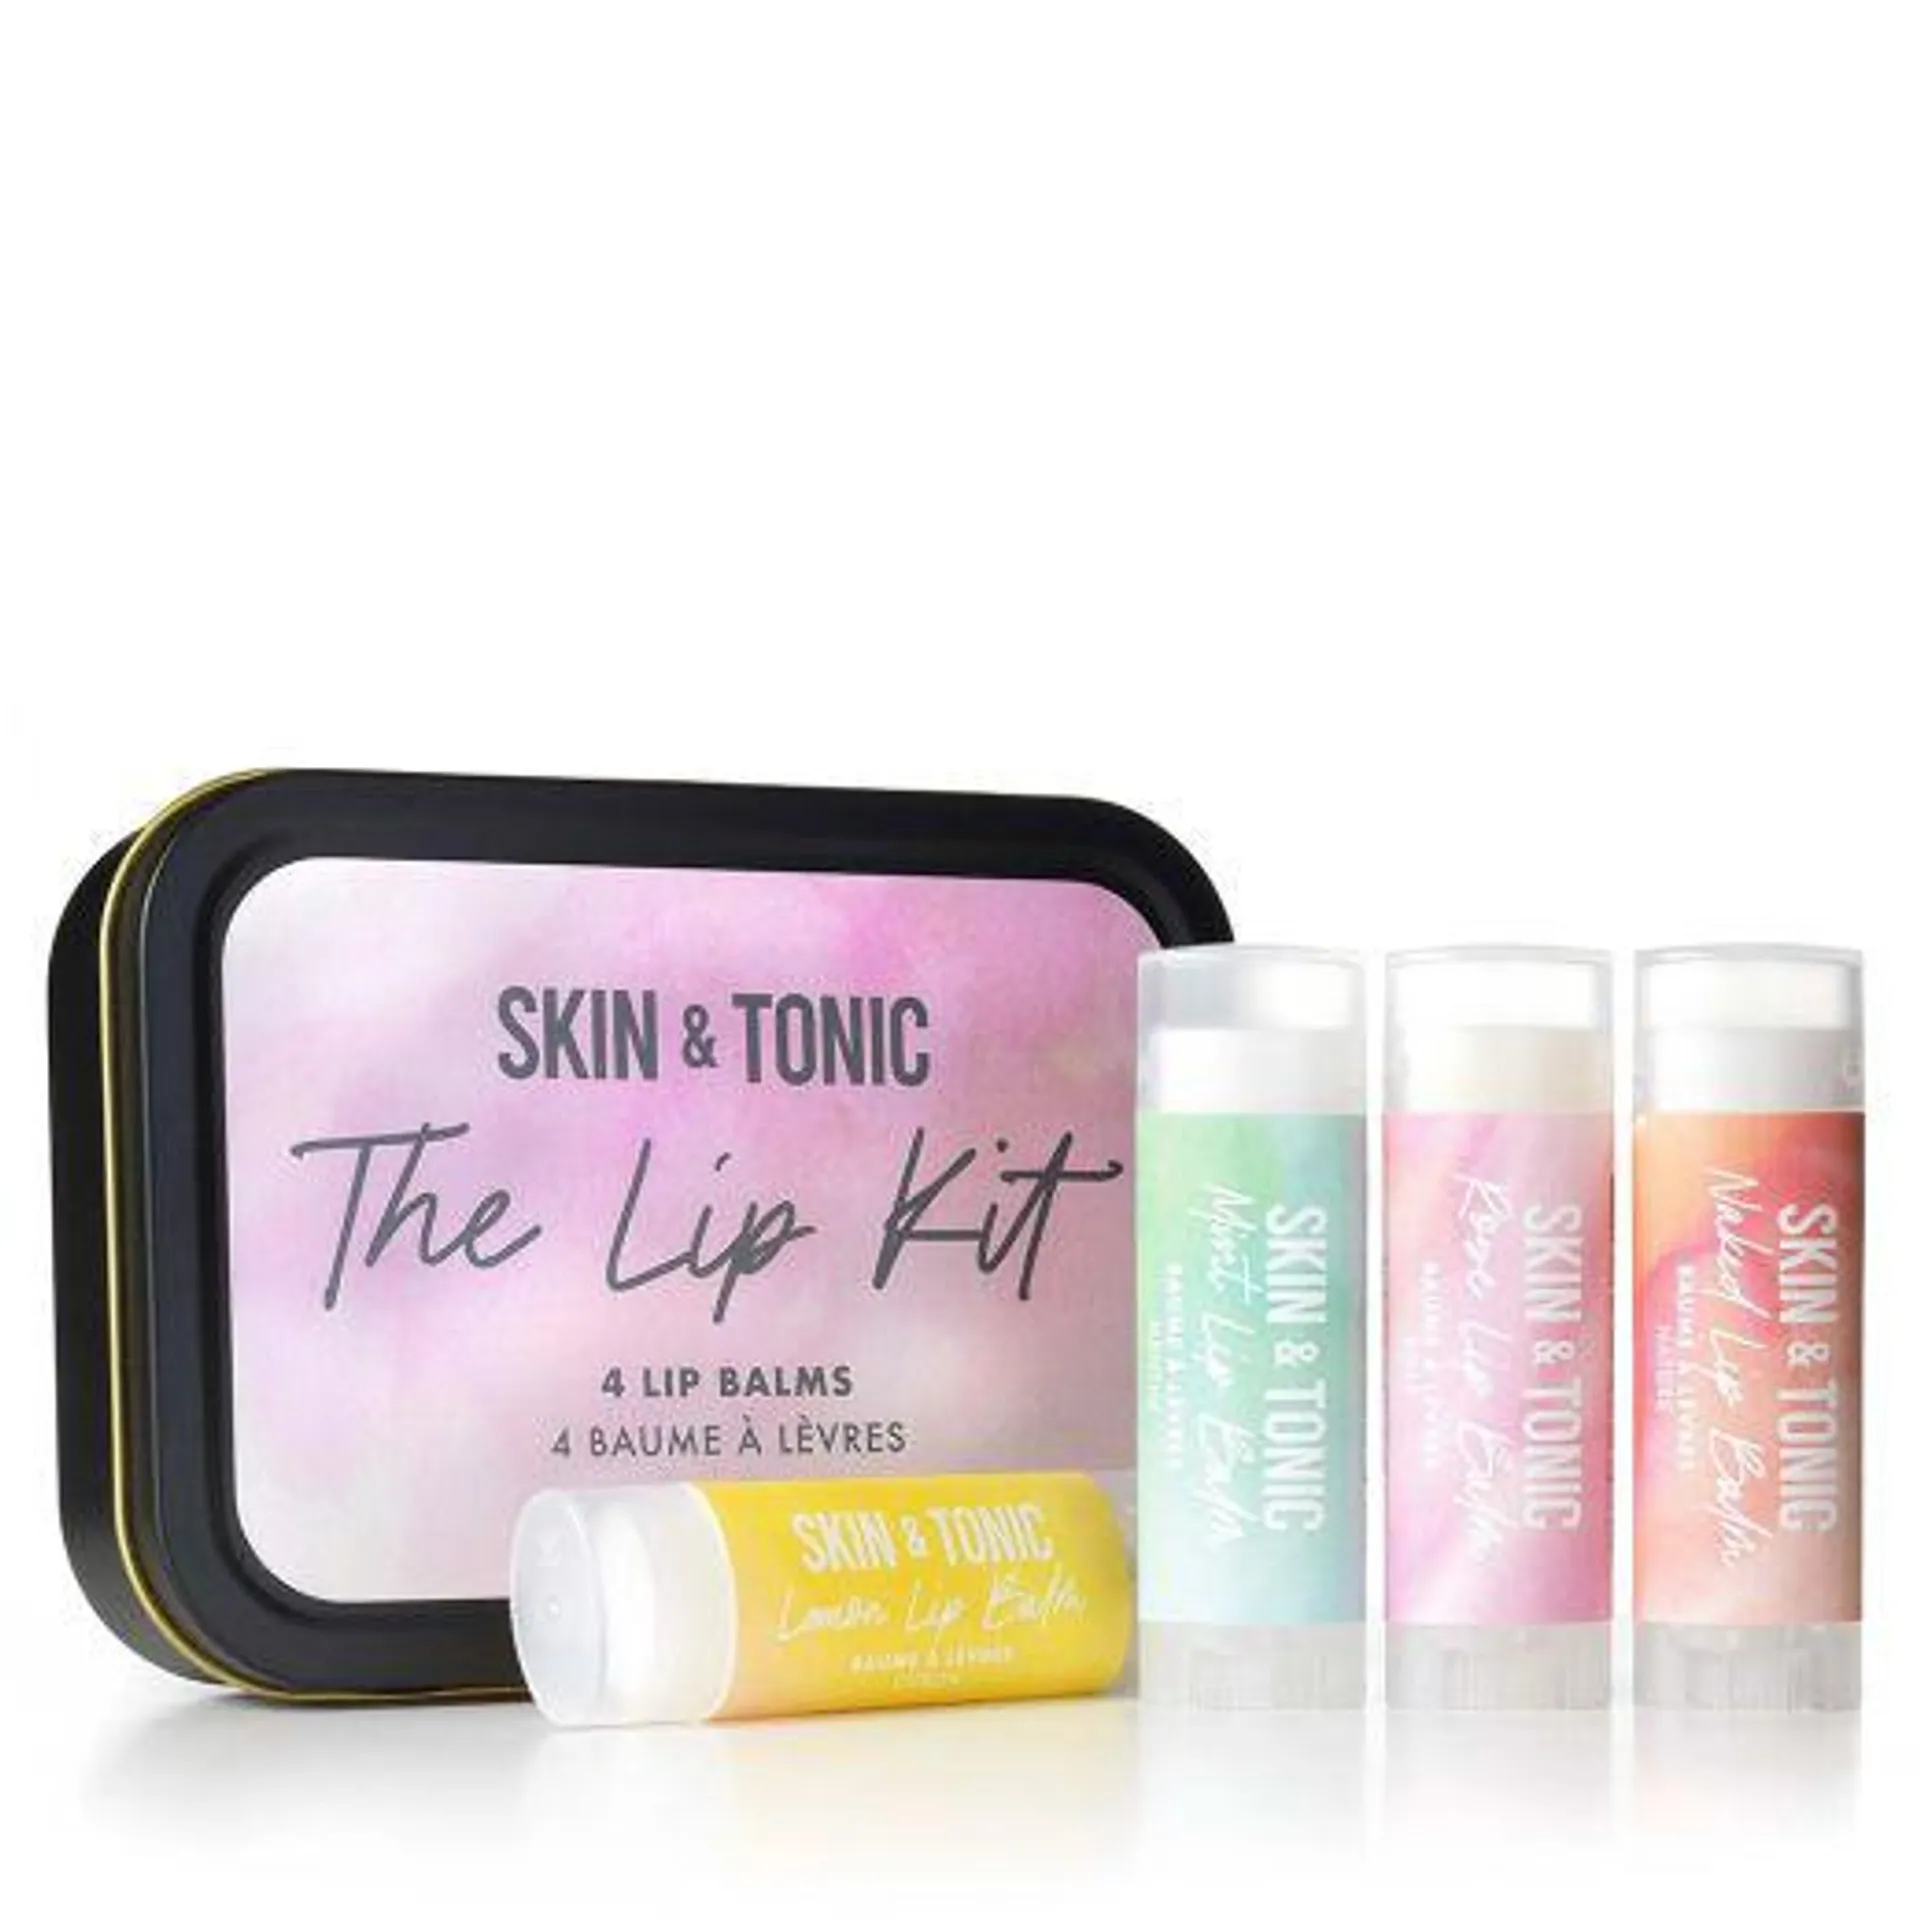 Skin & Tonic The Lip Kit